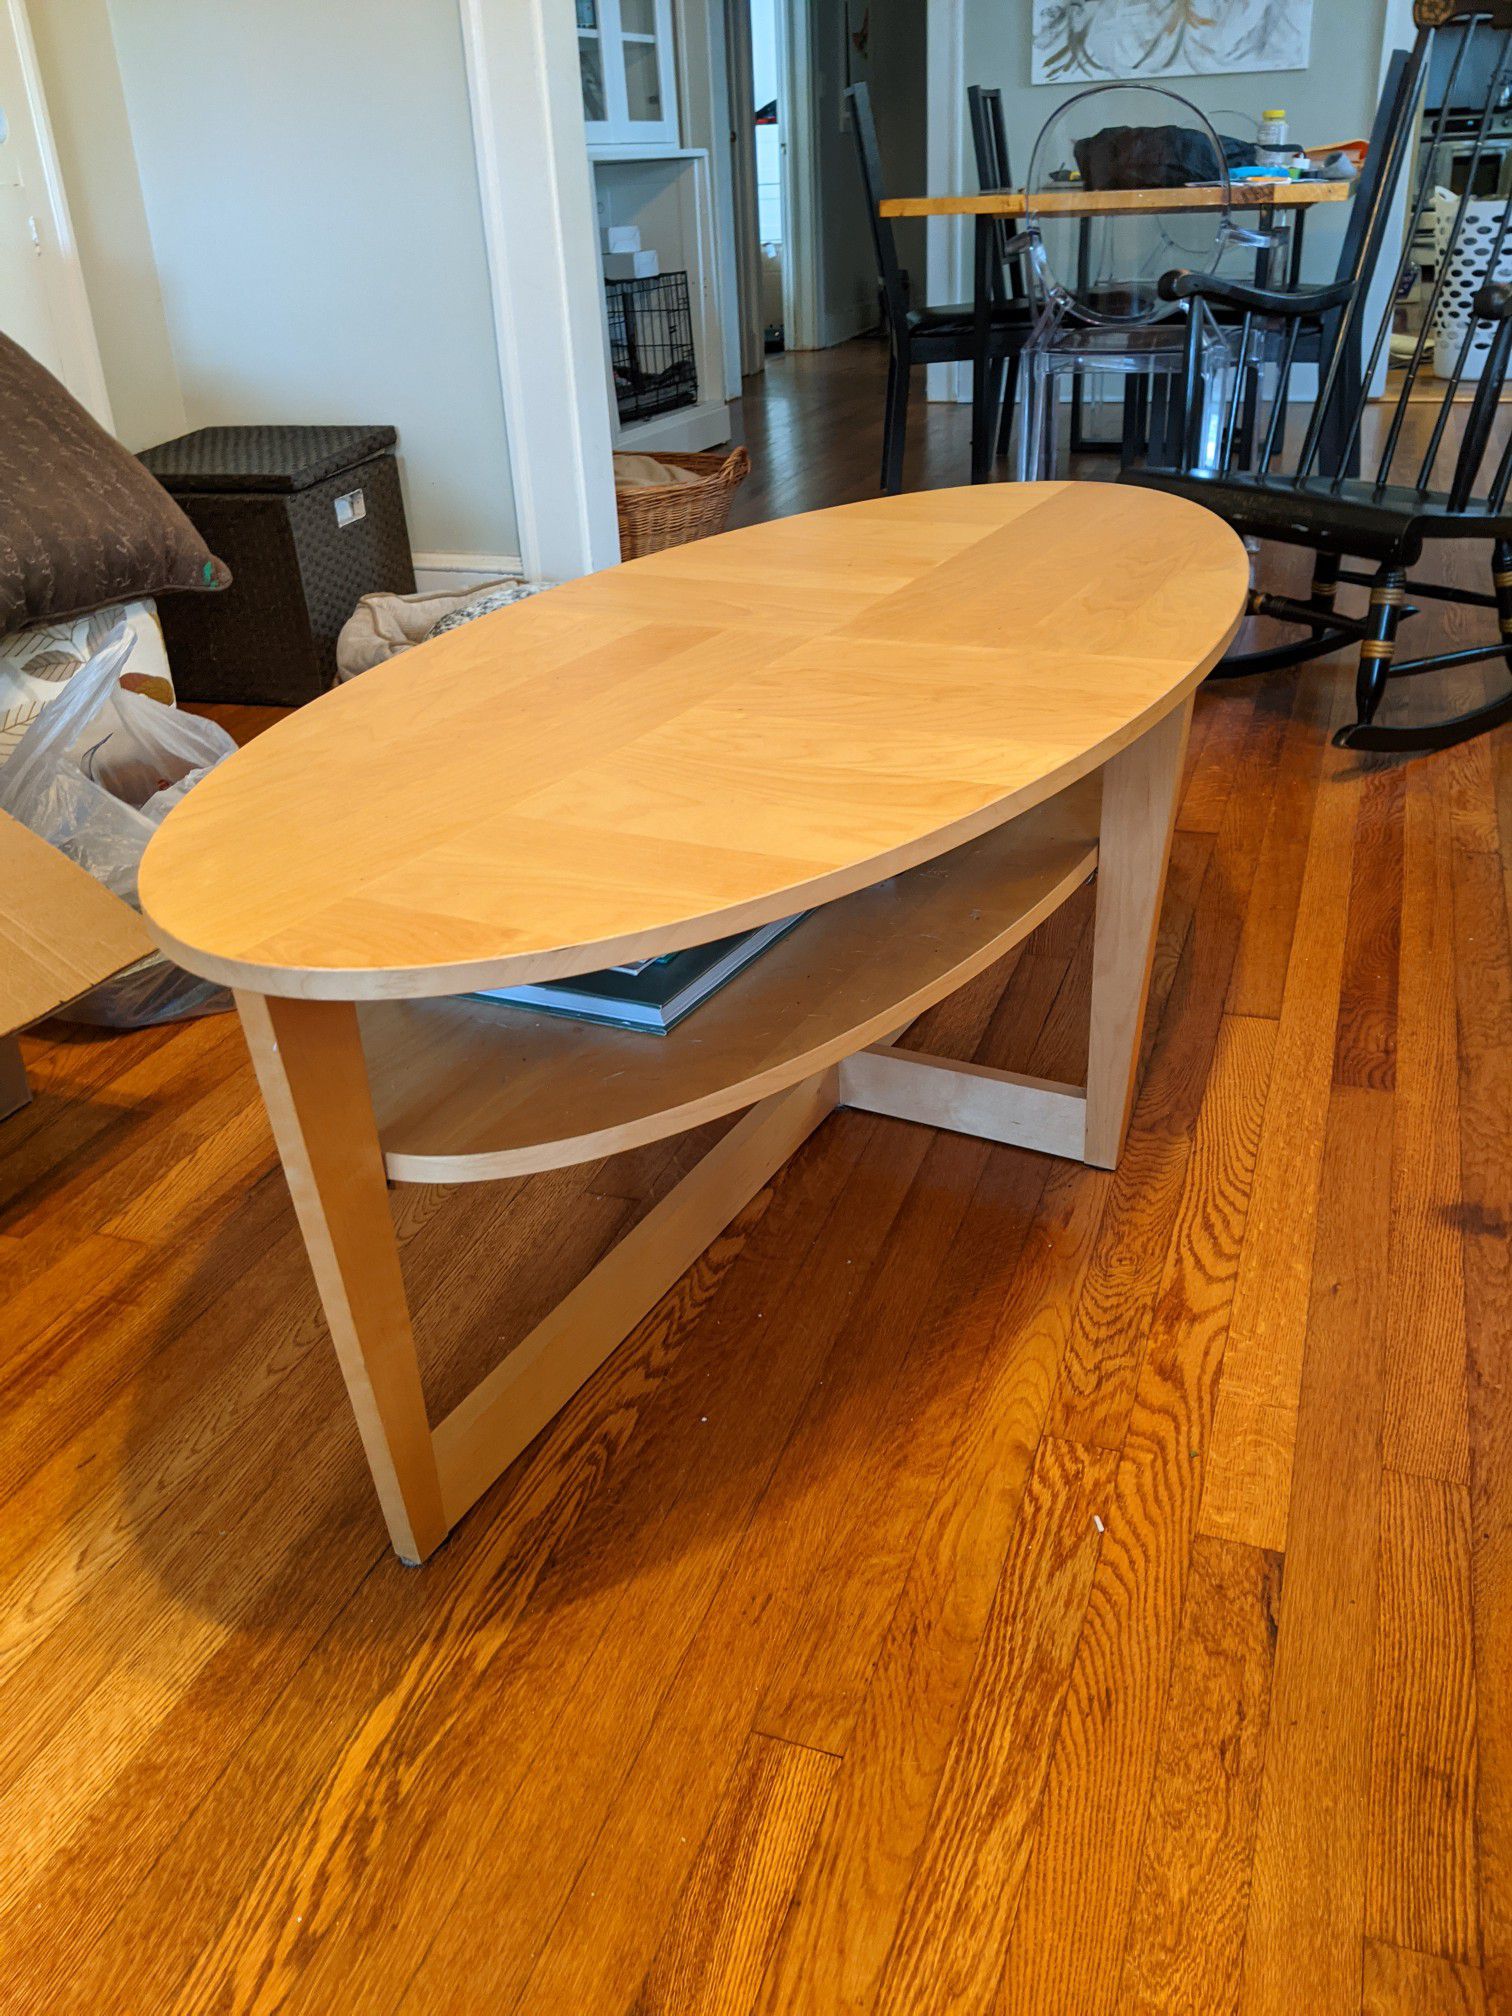 Ikea Oval Coffee Table (55" x 26")- Normal wear